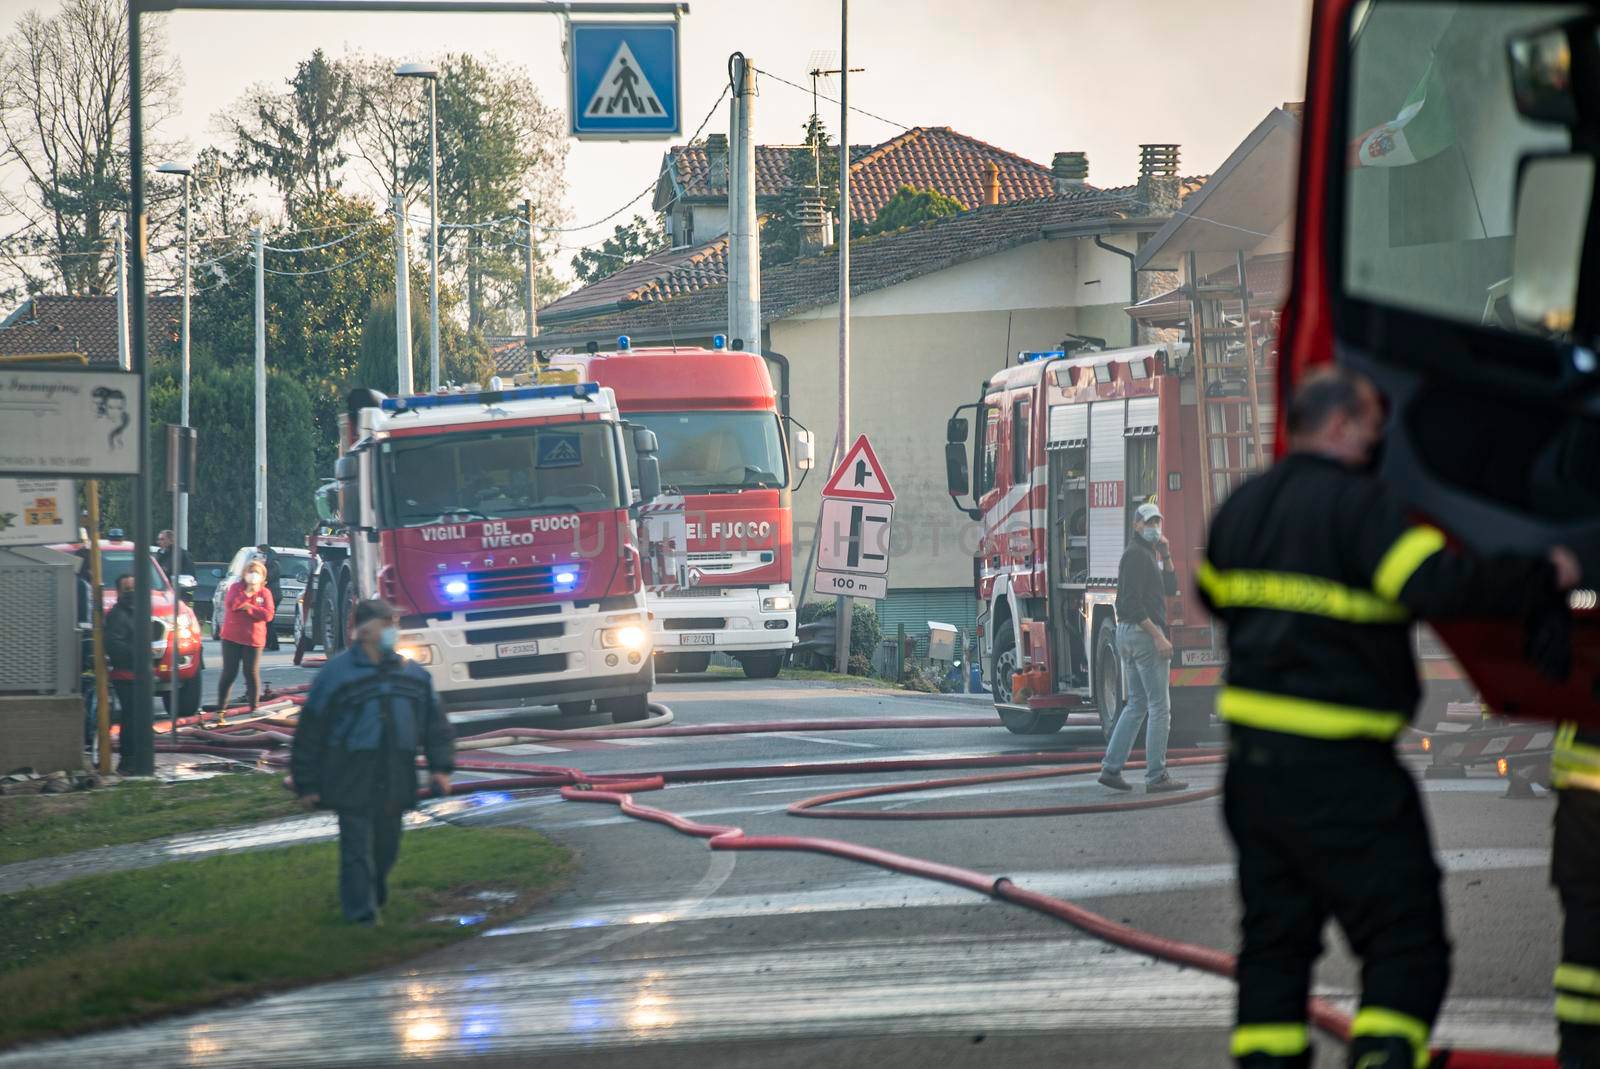 Italian Firefighters emergency 5 by pippocarlot